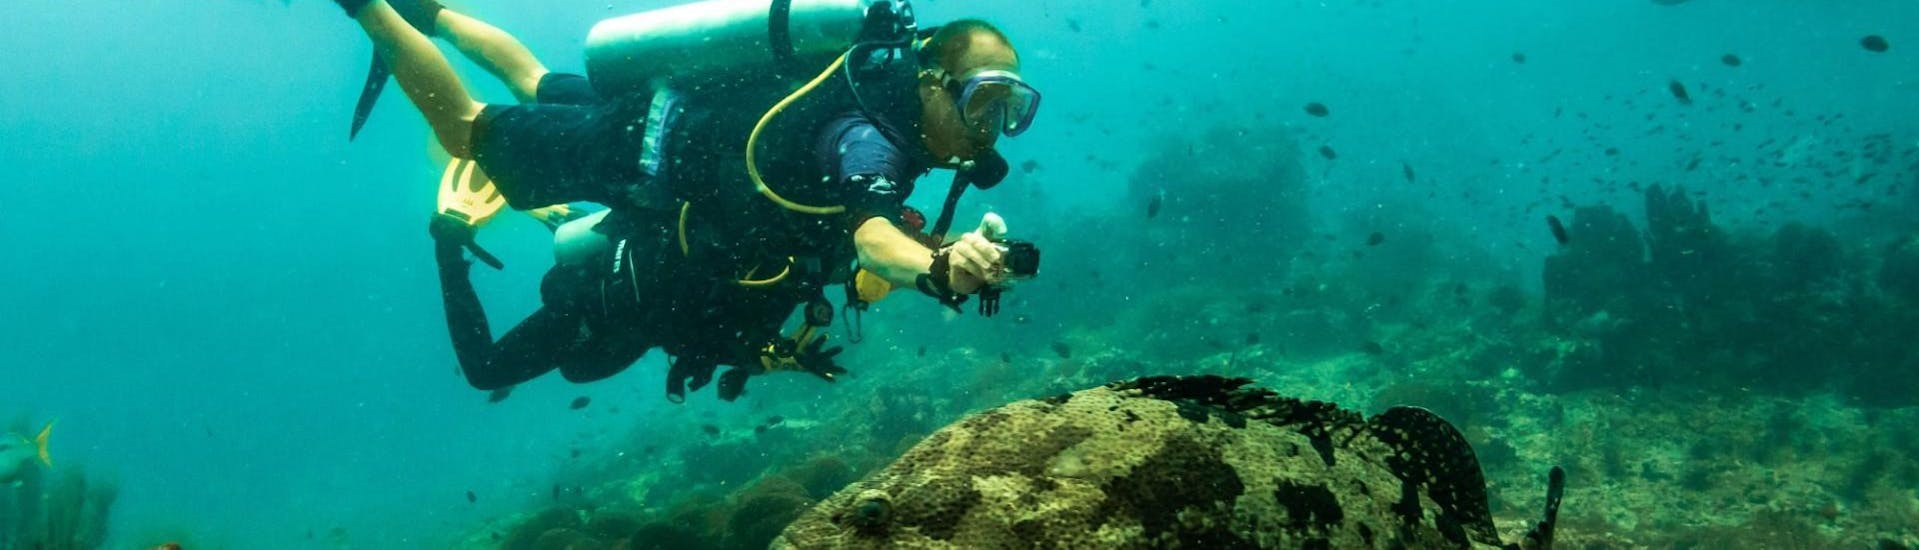 Un participant à la formation de plongée sous-marine pour obtenir le certificat PADI Open Water à Santa Ponsa pendant une sortie proposée par Dive Academy Santa Pola.